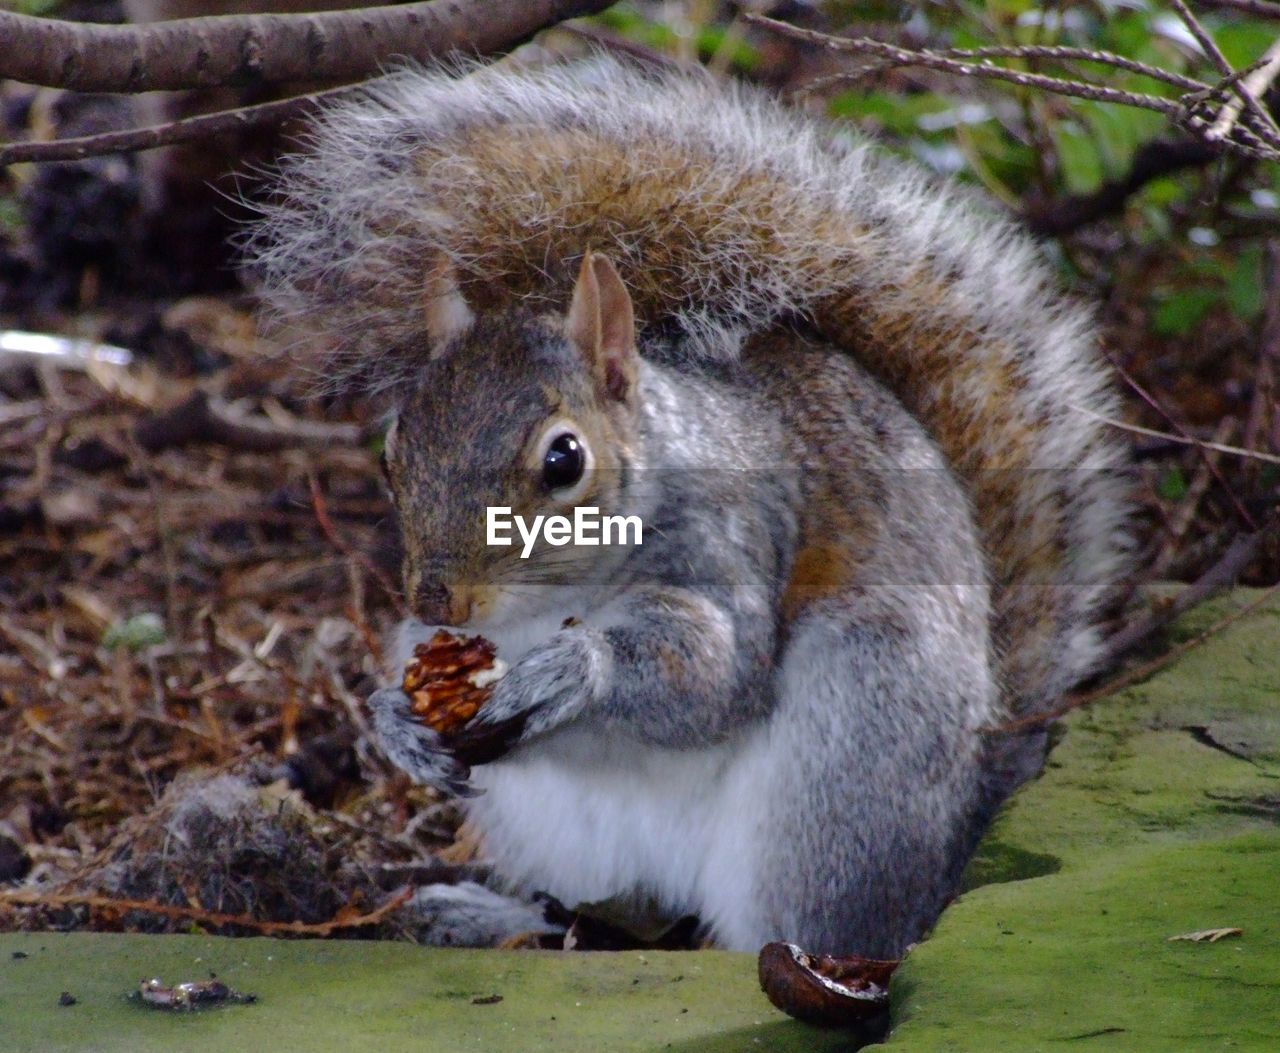 Portrait of squirrel feeding on food